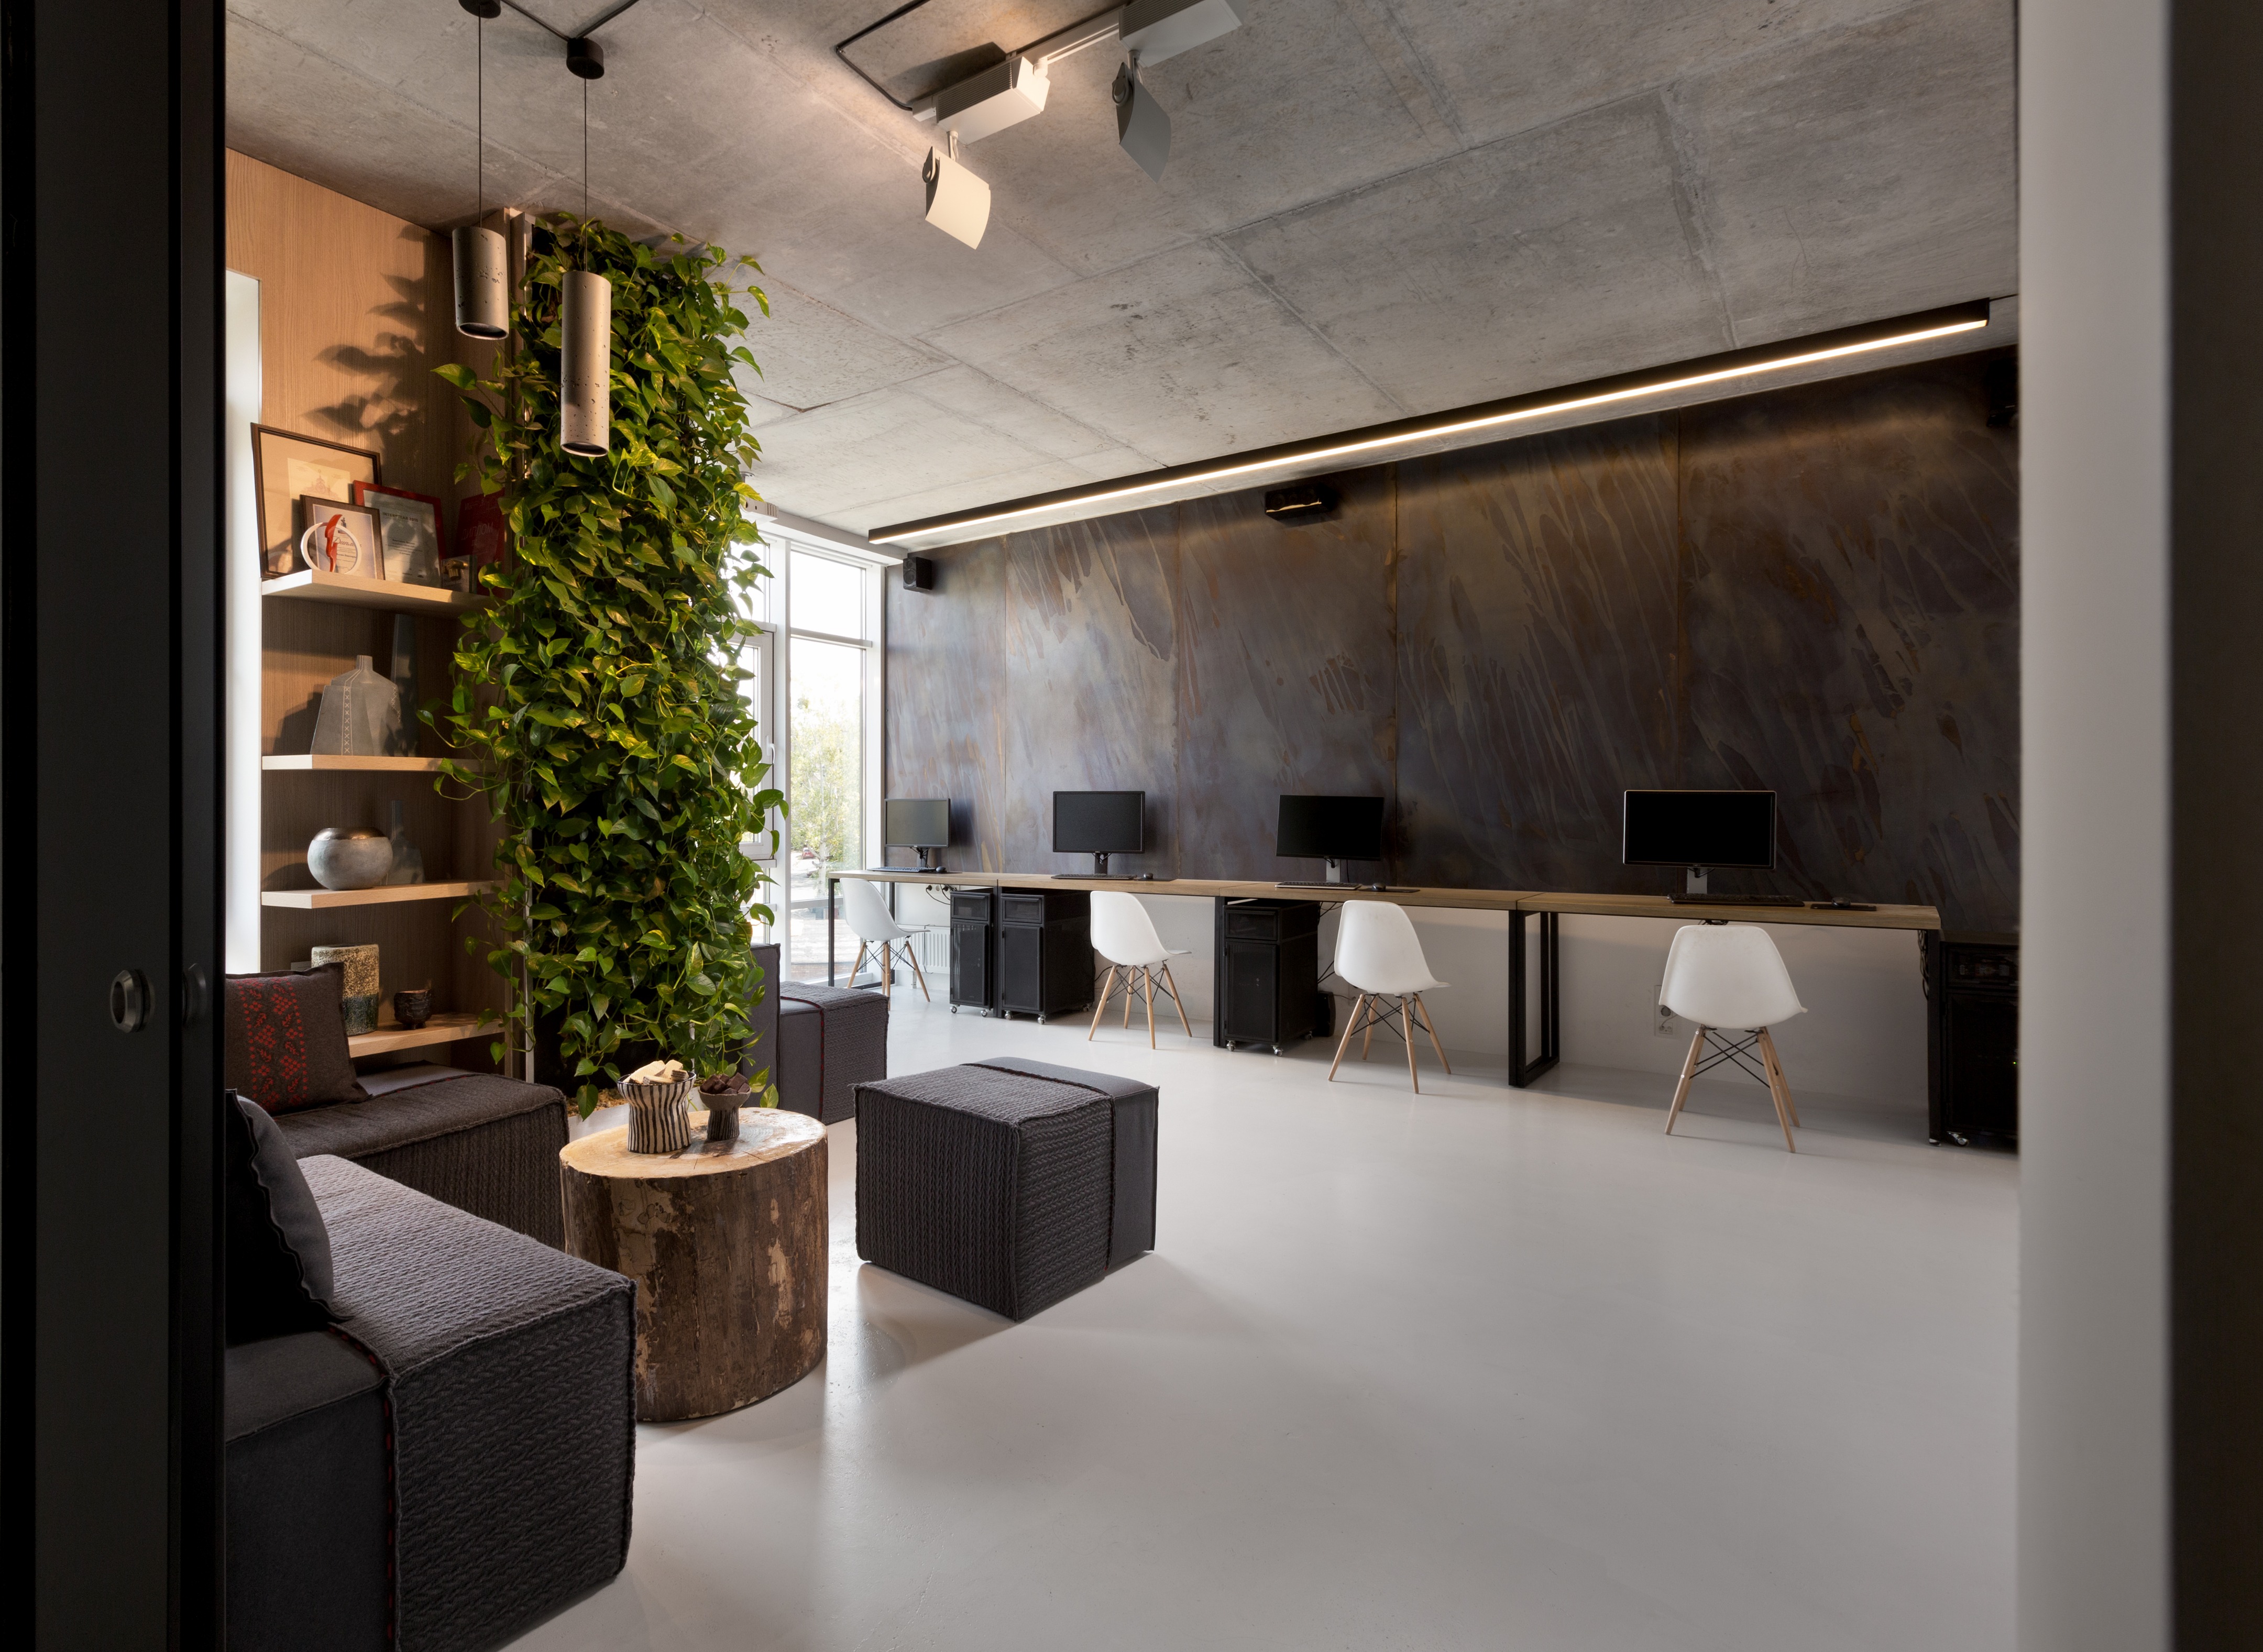 Inside Yakusha Design minimalist office interior | Yakusha Design